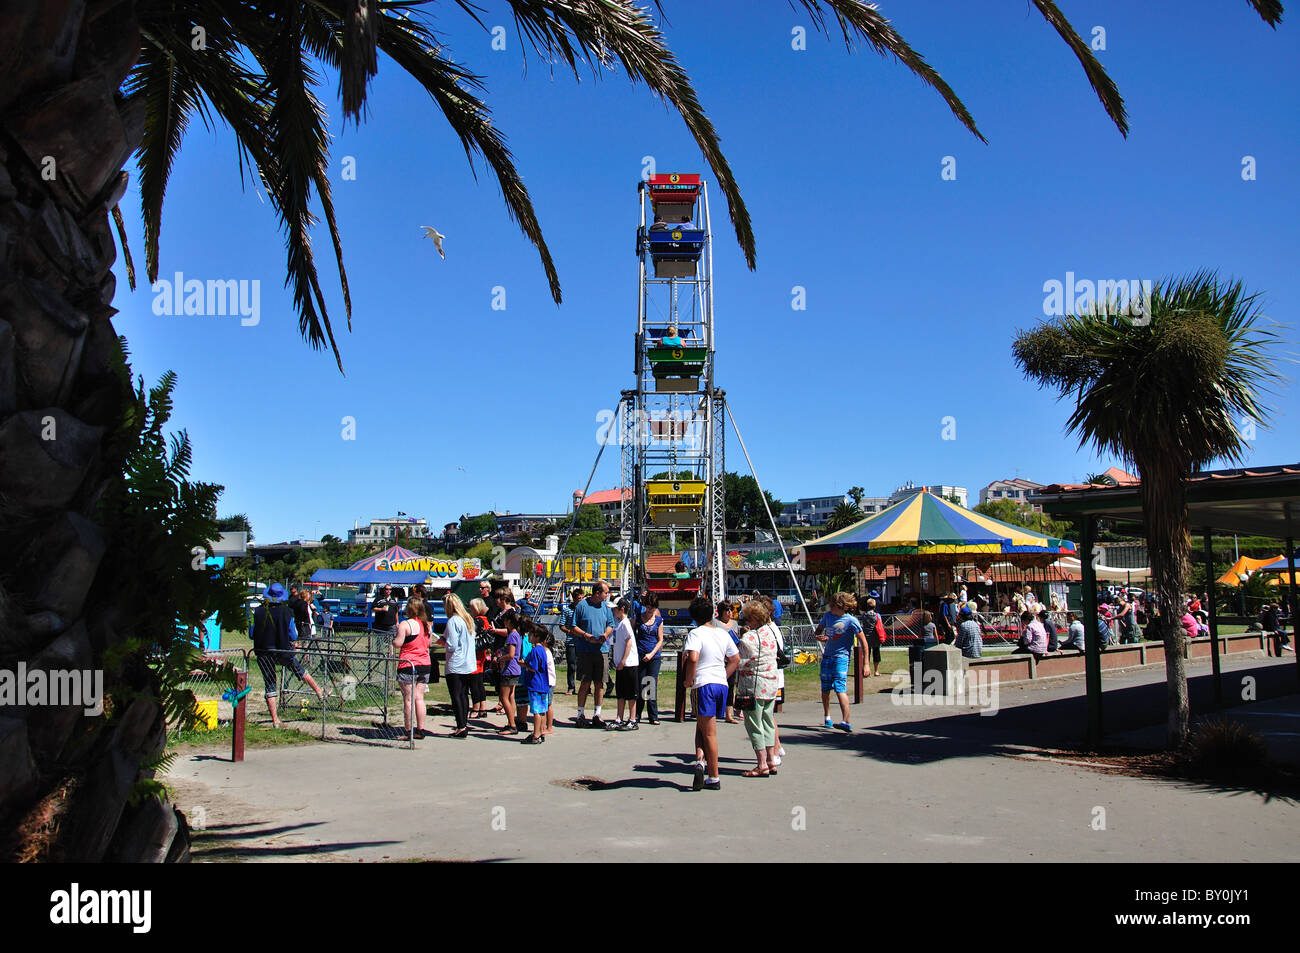 Manèges au Caroline Bay Festival, Caroline Bay, Timaru (te Tihi-o-Maru), Canterbury, Île du Sud, nouvelle-Zélande Banque D'Images